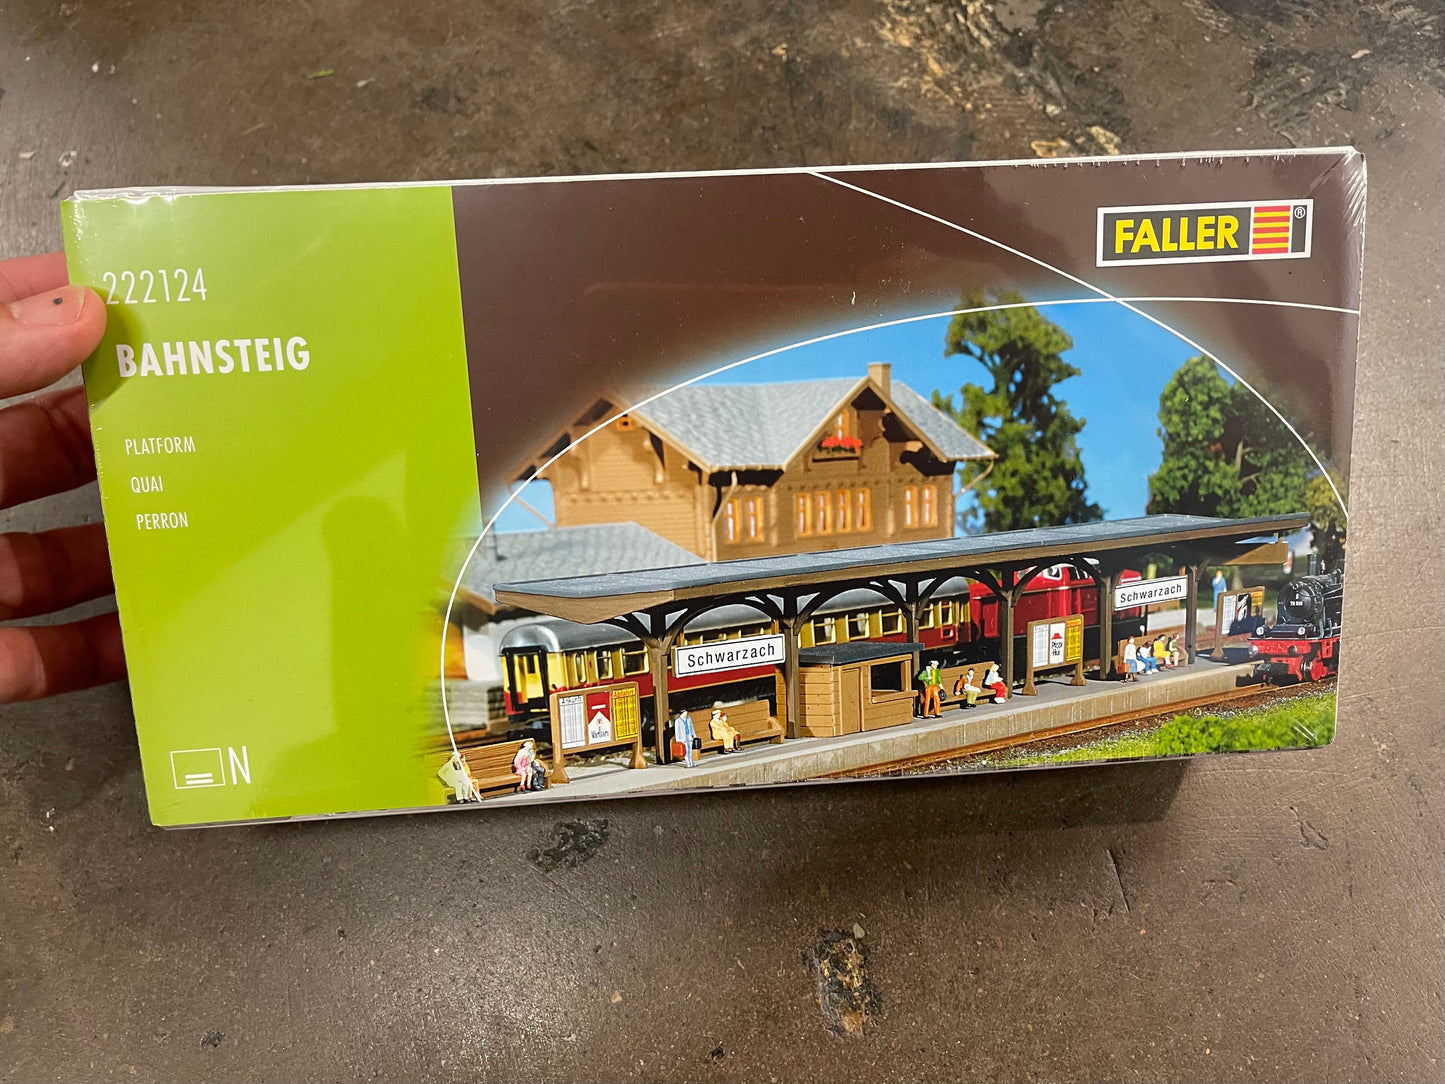 Faller 222124 - Platform